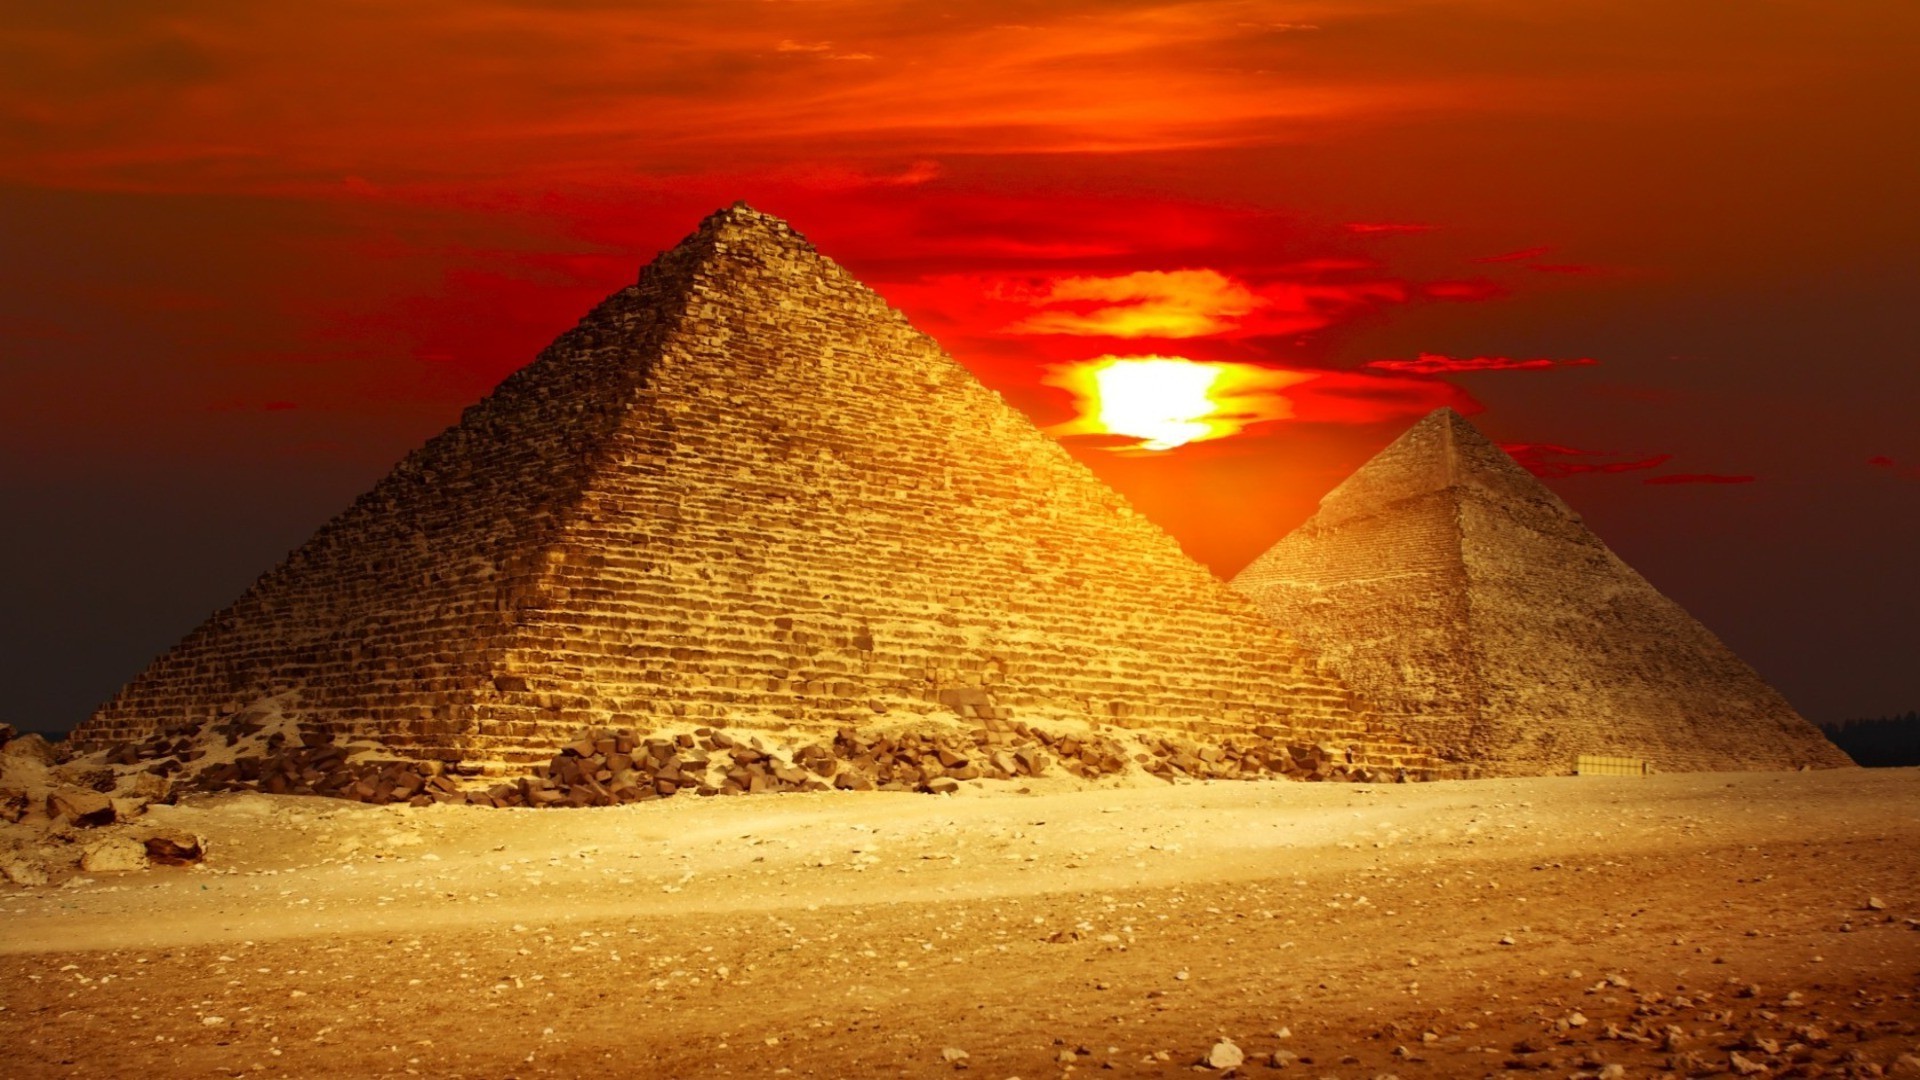 знаменитые места пирамида пустыня закат путешествия солнце фараон могила песок рассвет верблюд небо археология вечером на открытом воздухе древние